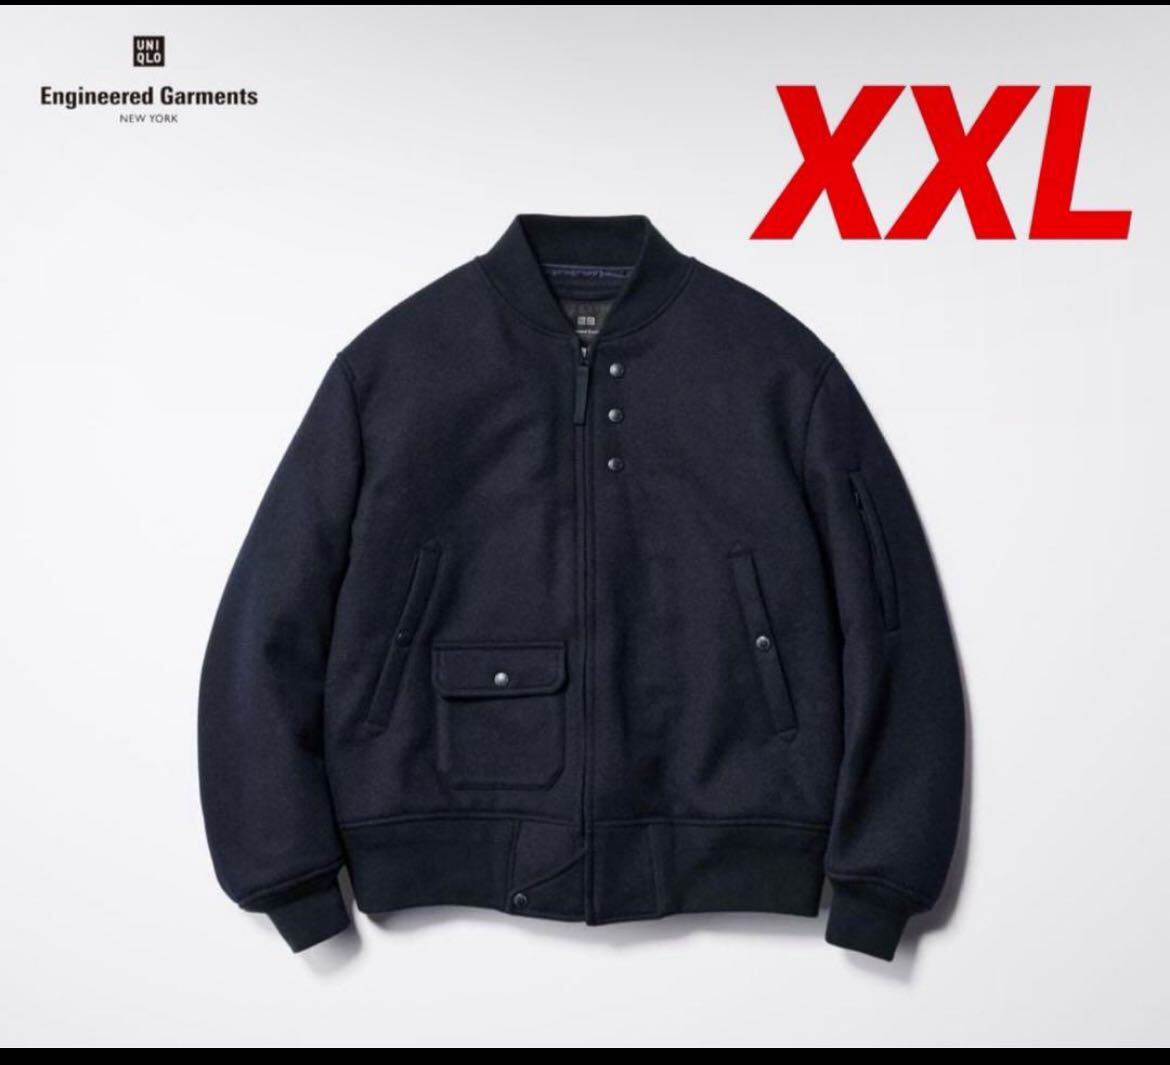 ユニクロ Engineered Garments XXLUNIQLO パフテック PUFFTECH 日本未発売 エンジニアドガーメンツ ショートブルゾン _画像1